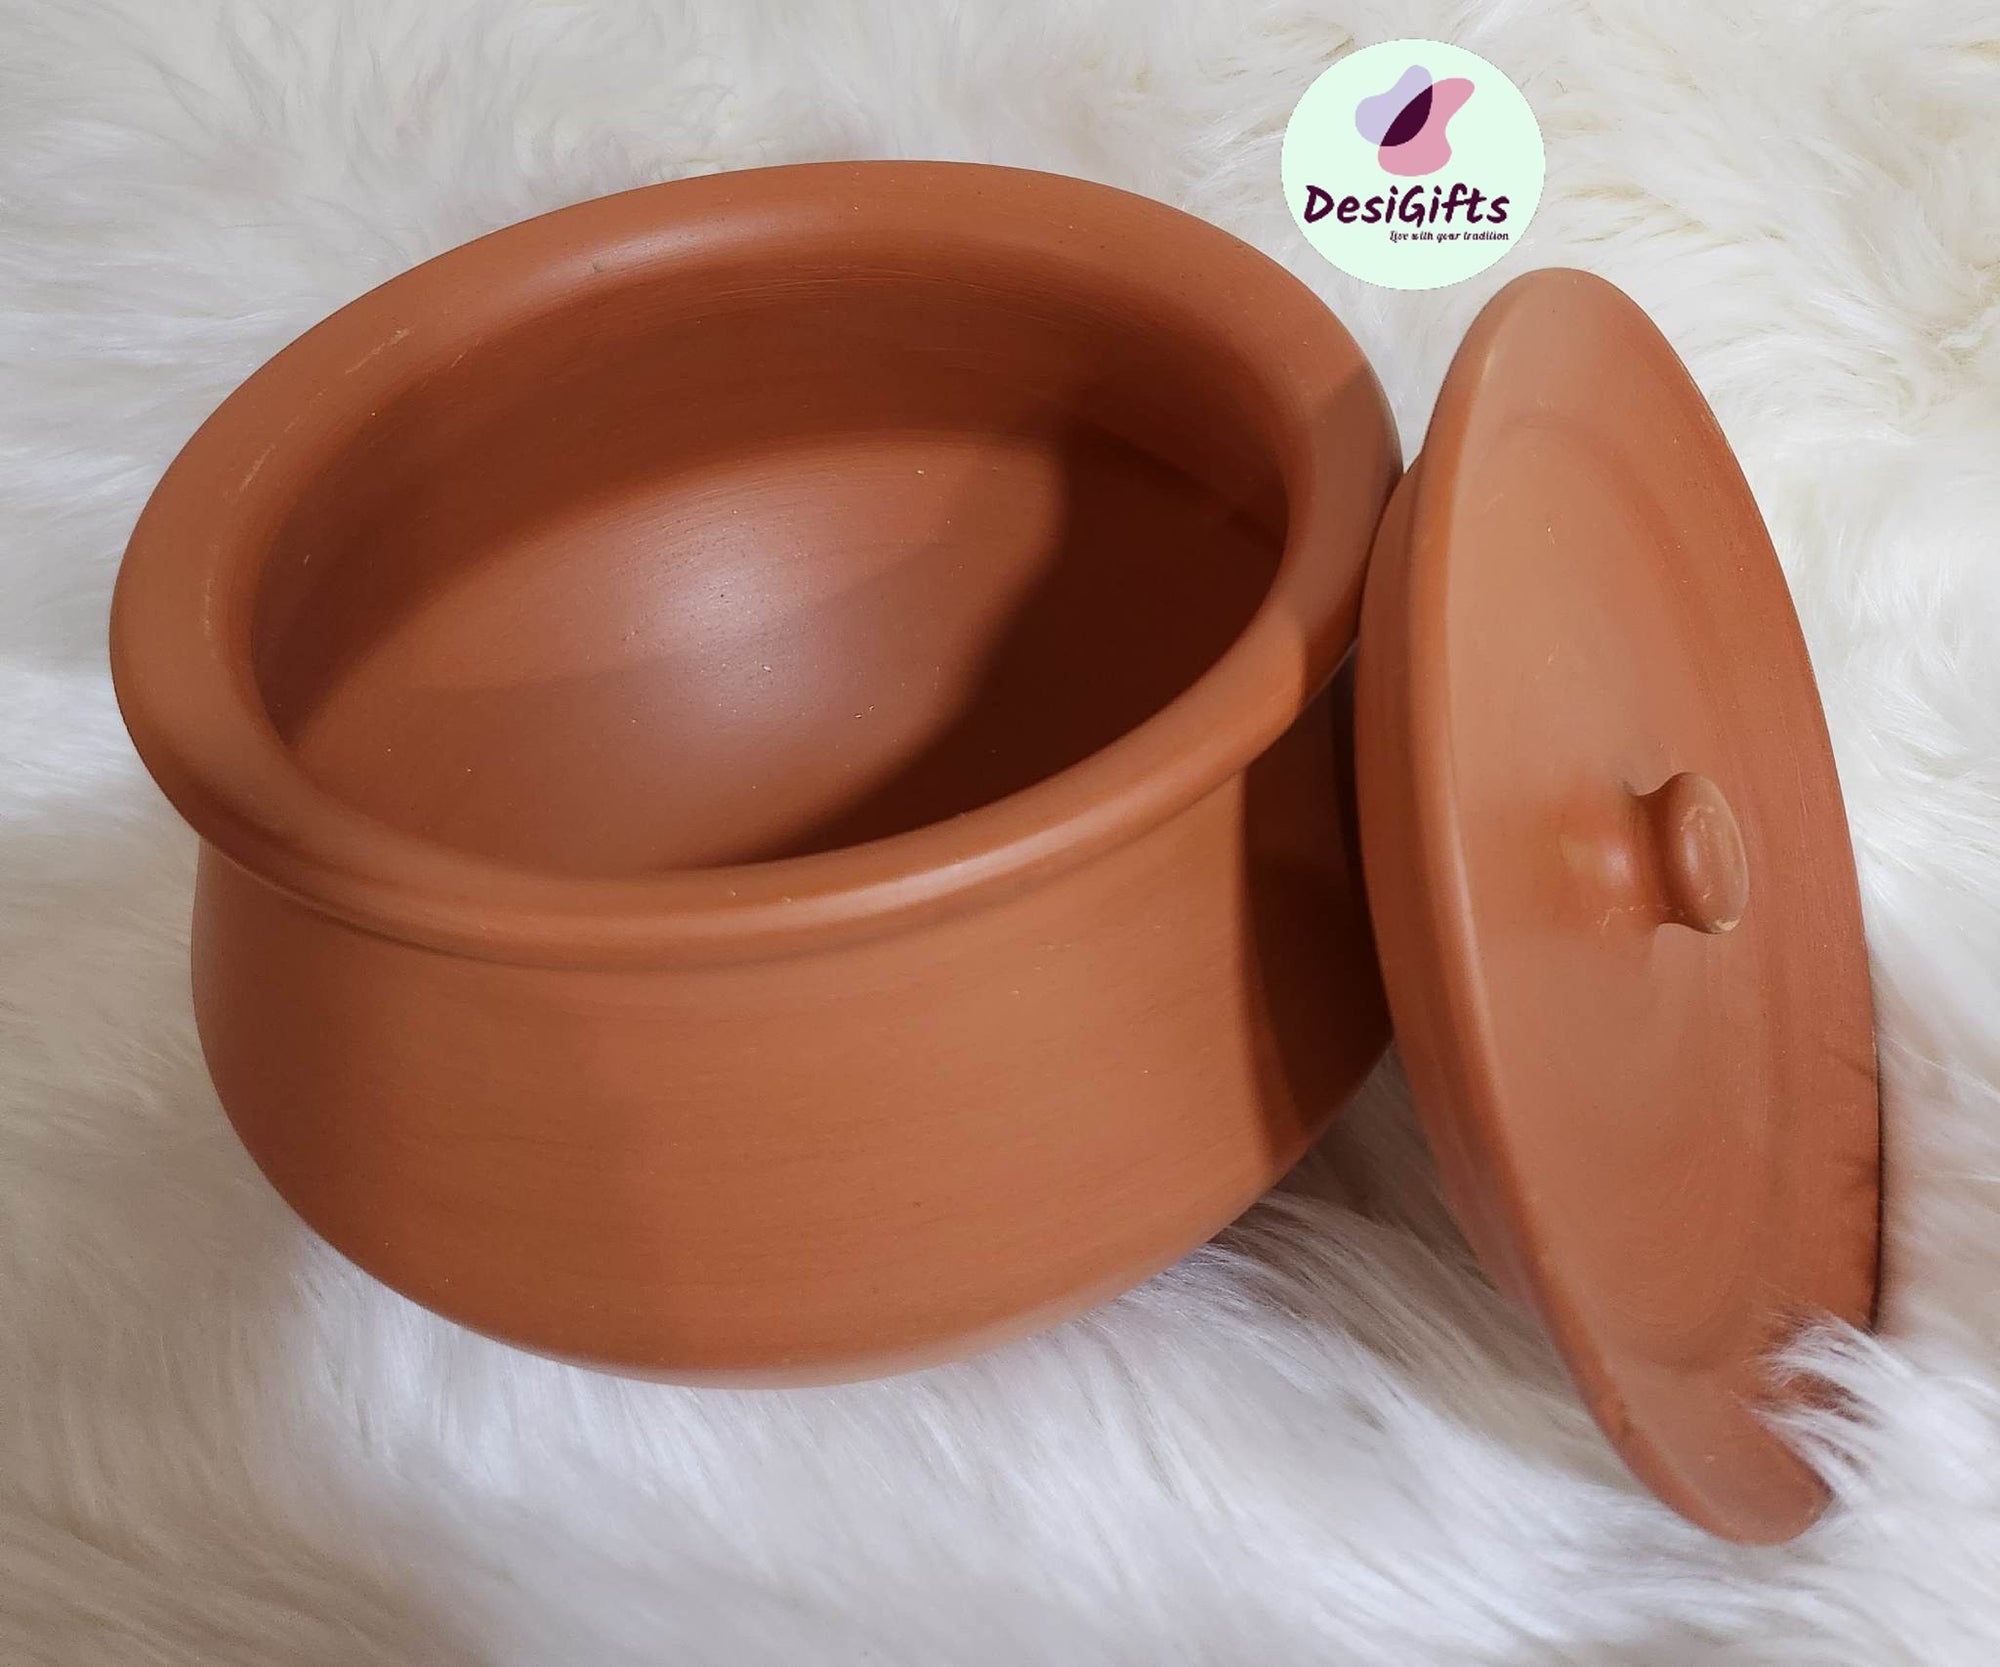 Four Liter Size Mitti Ki Handi, Natural Clay Pot for Cooking, Yogurt Making, CPT- 514